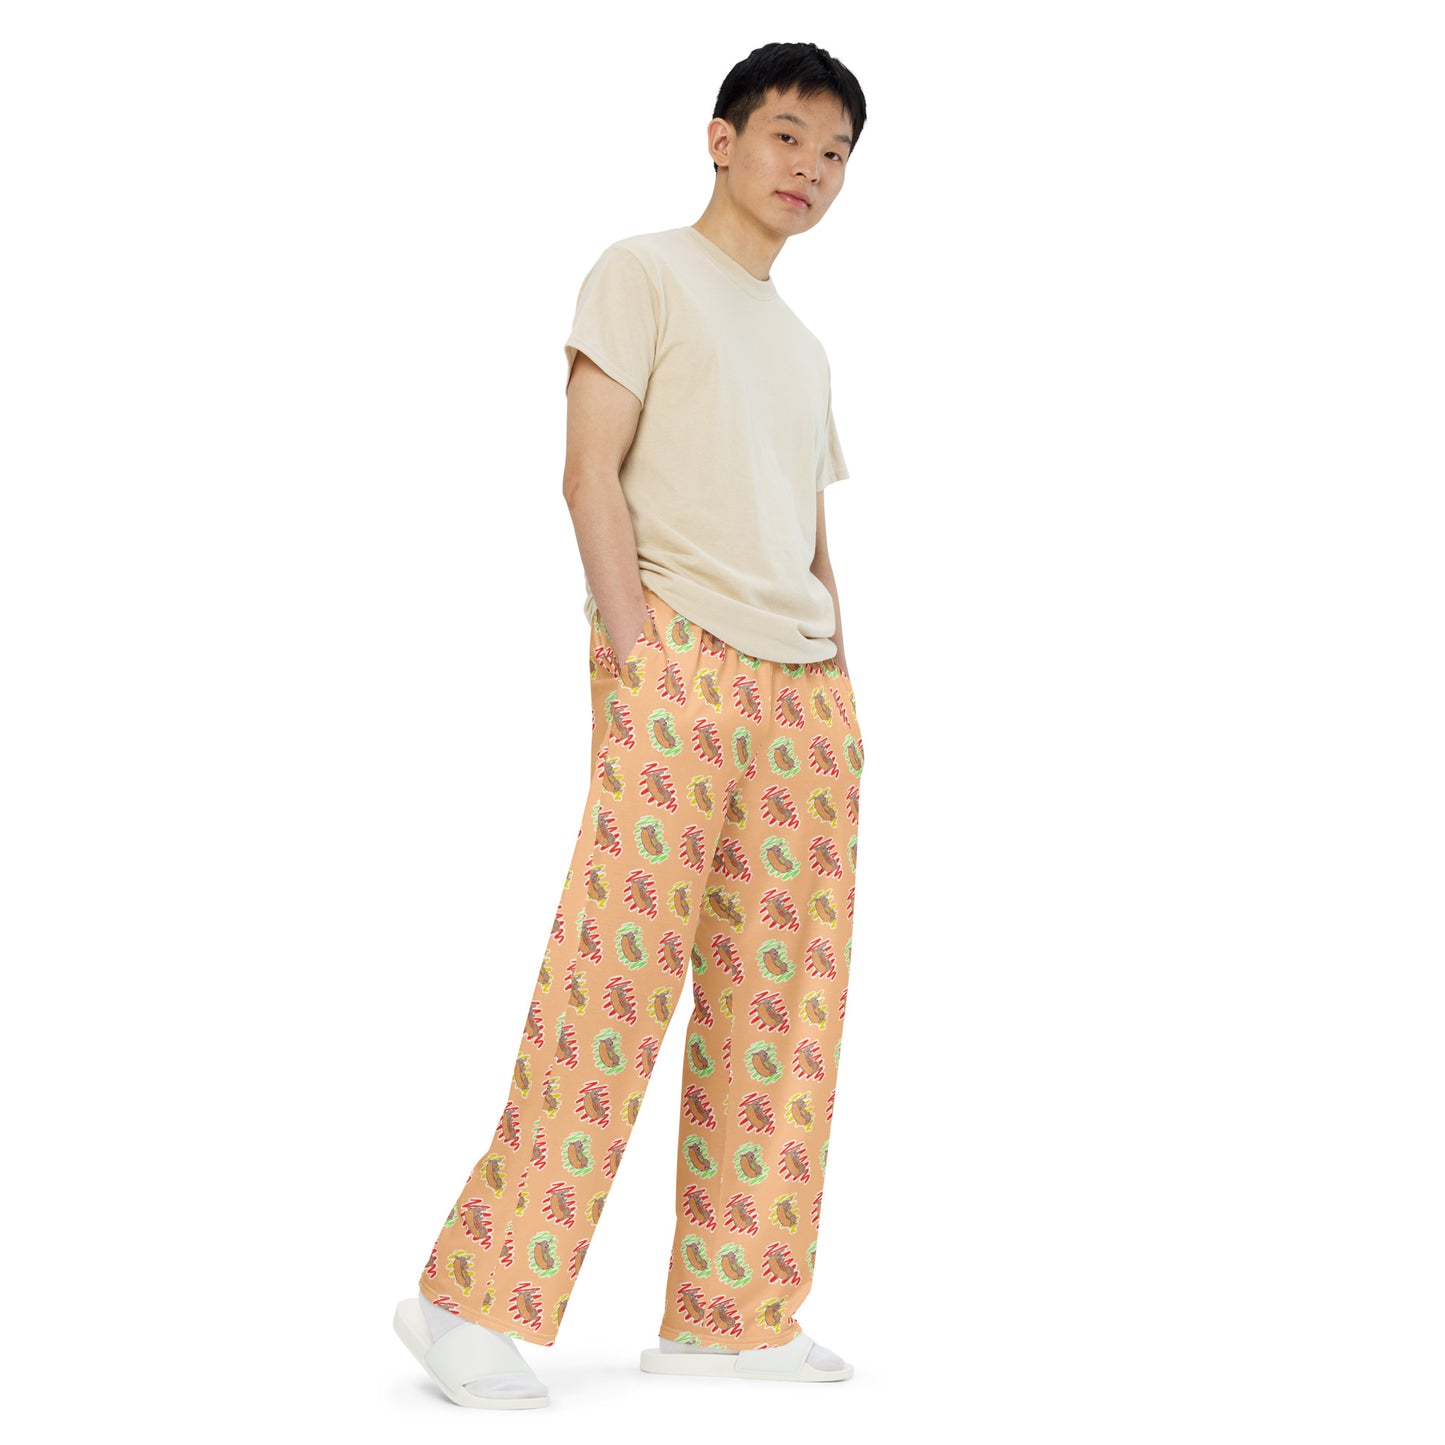 Hot Dog Lover Unisex Pajama Pants